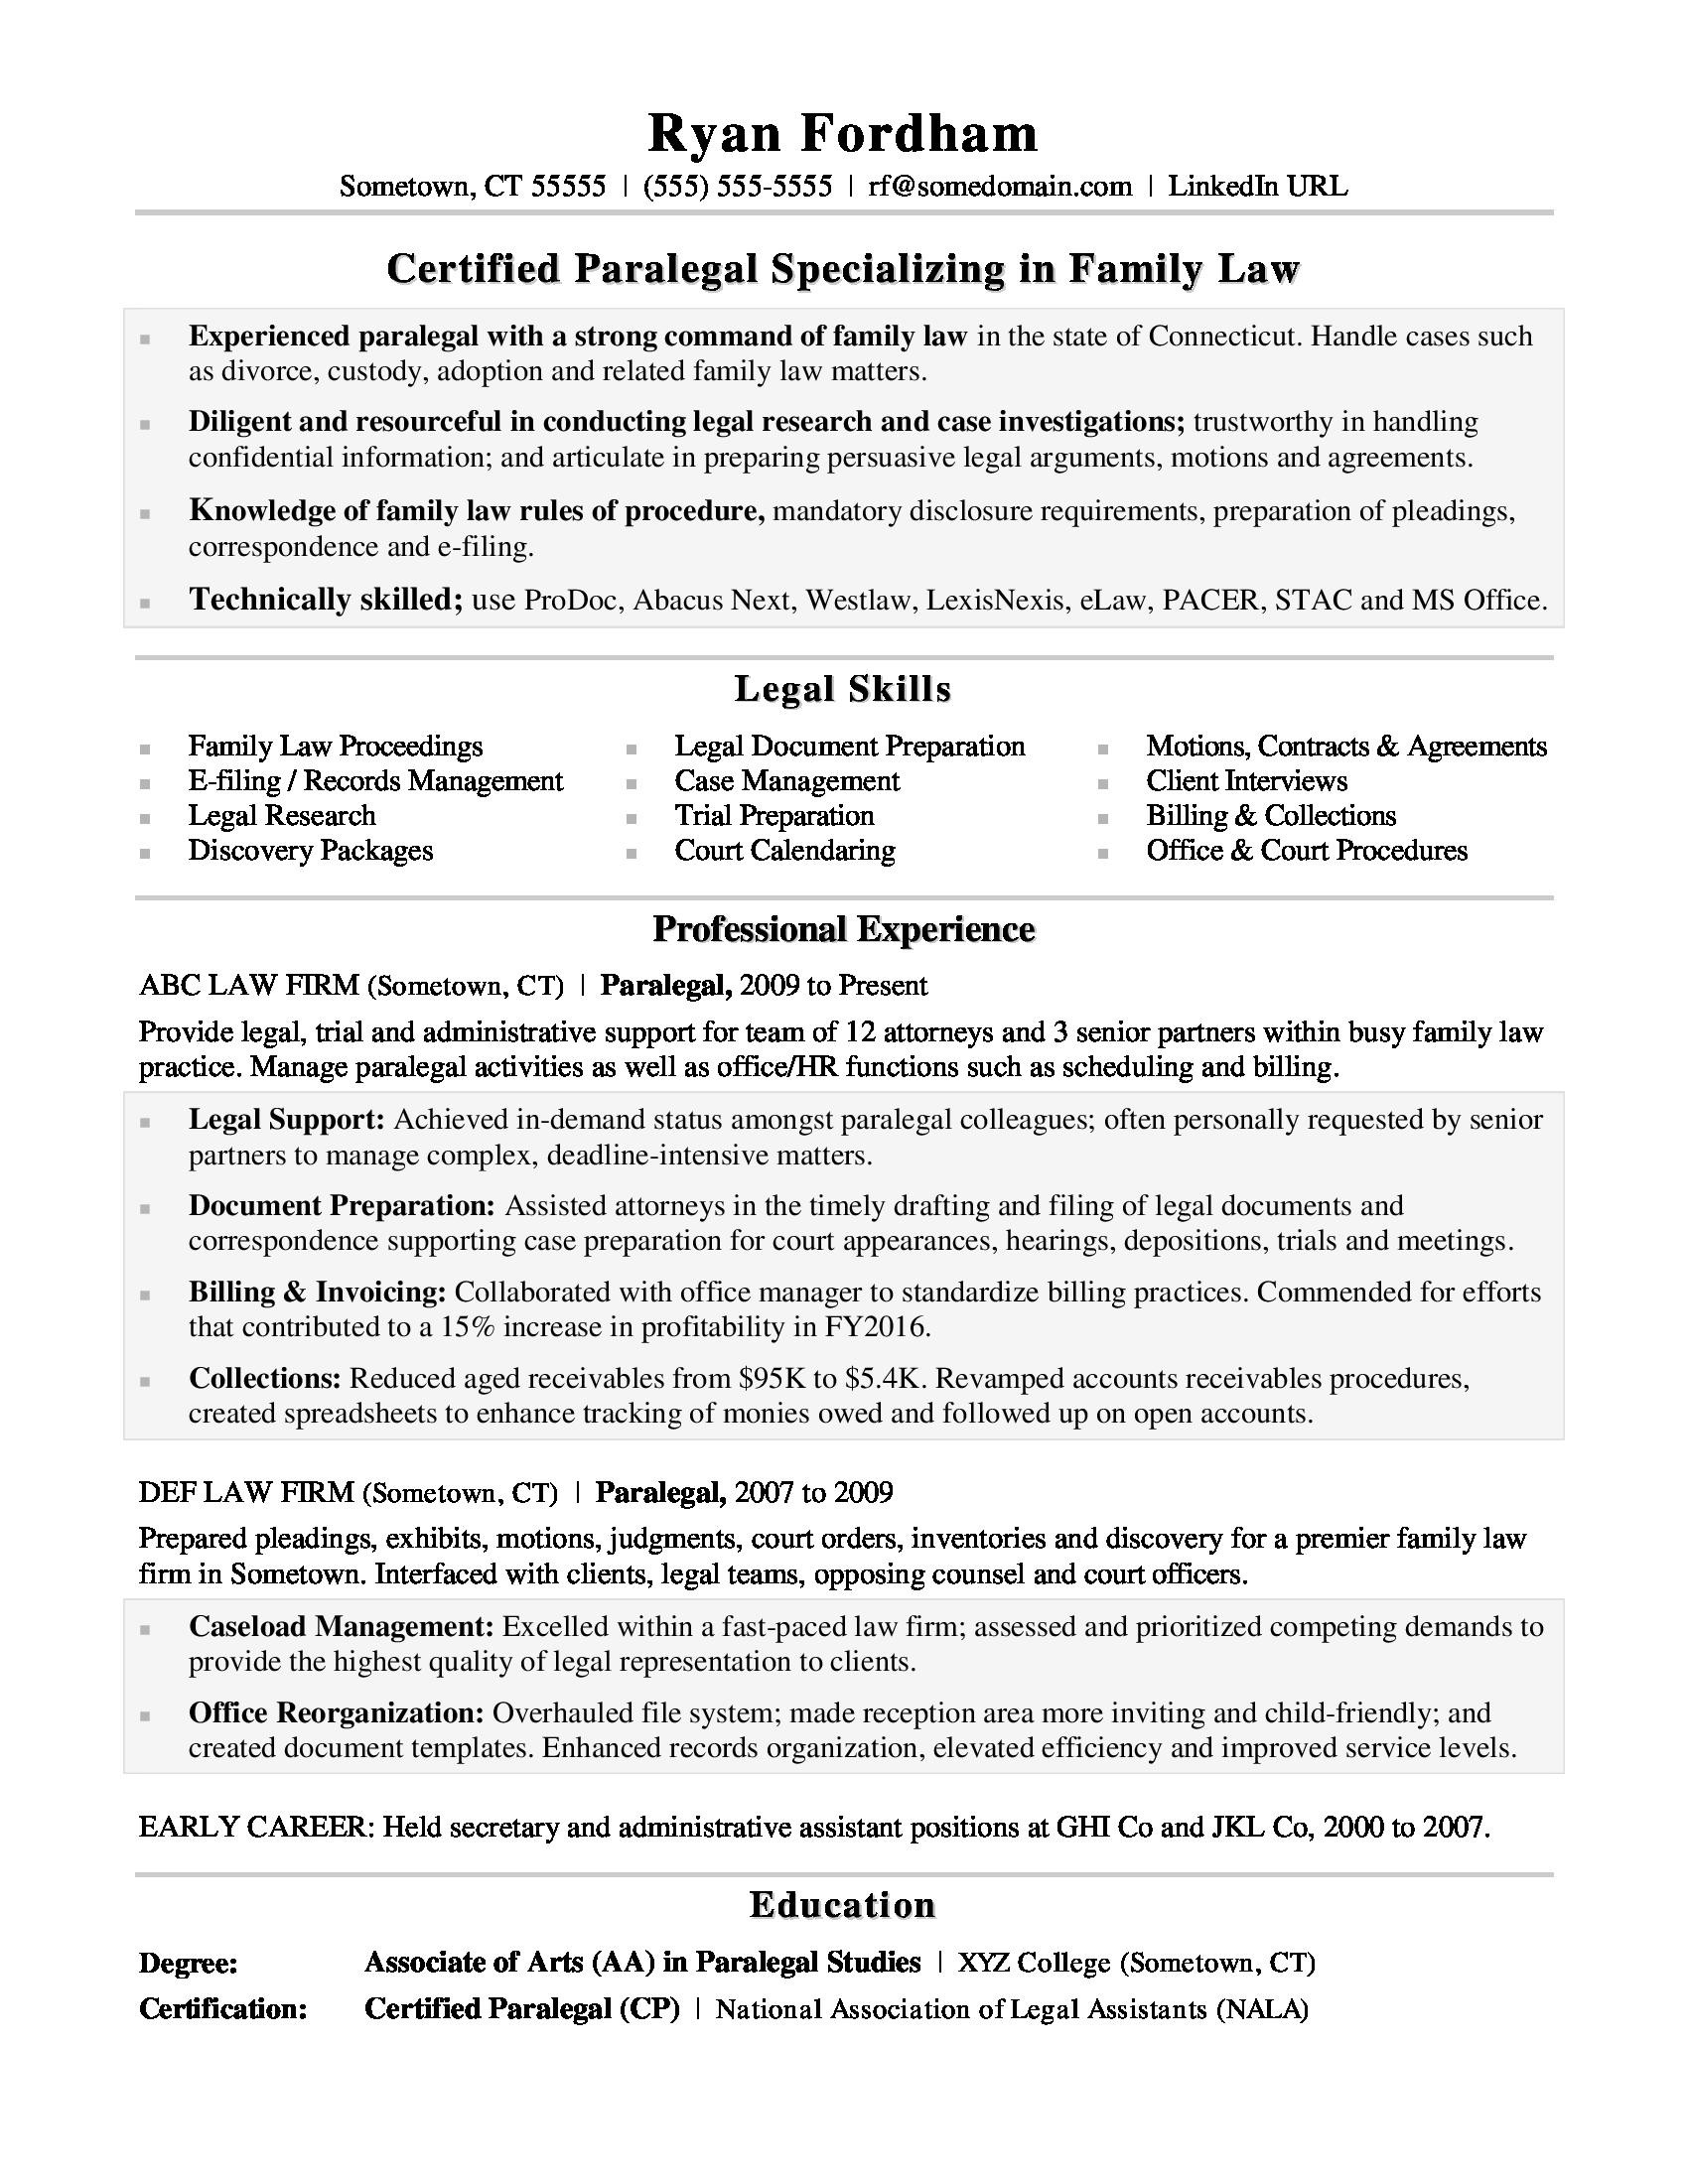 Real Estate Legal assistant Resume Sample Paralegal Resume Sample Monster.com